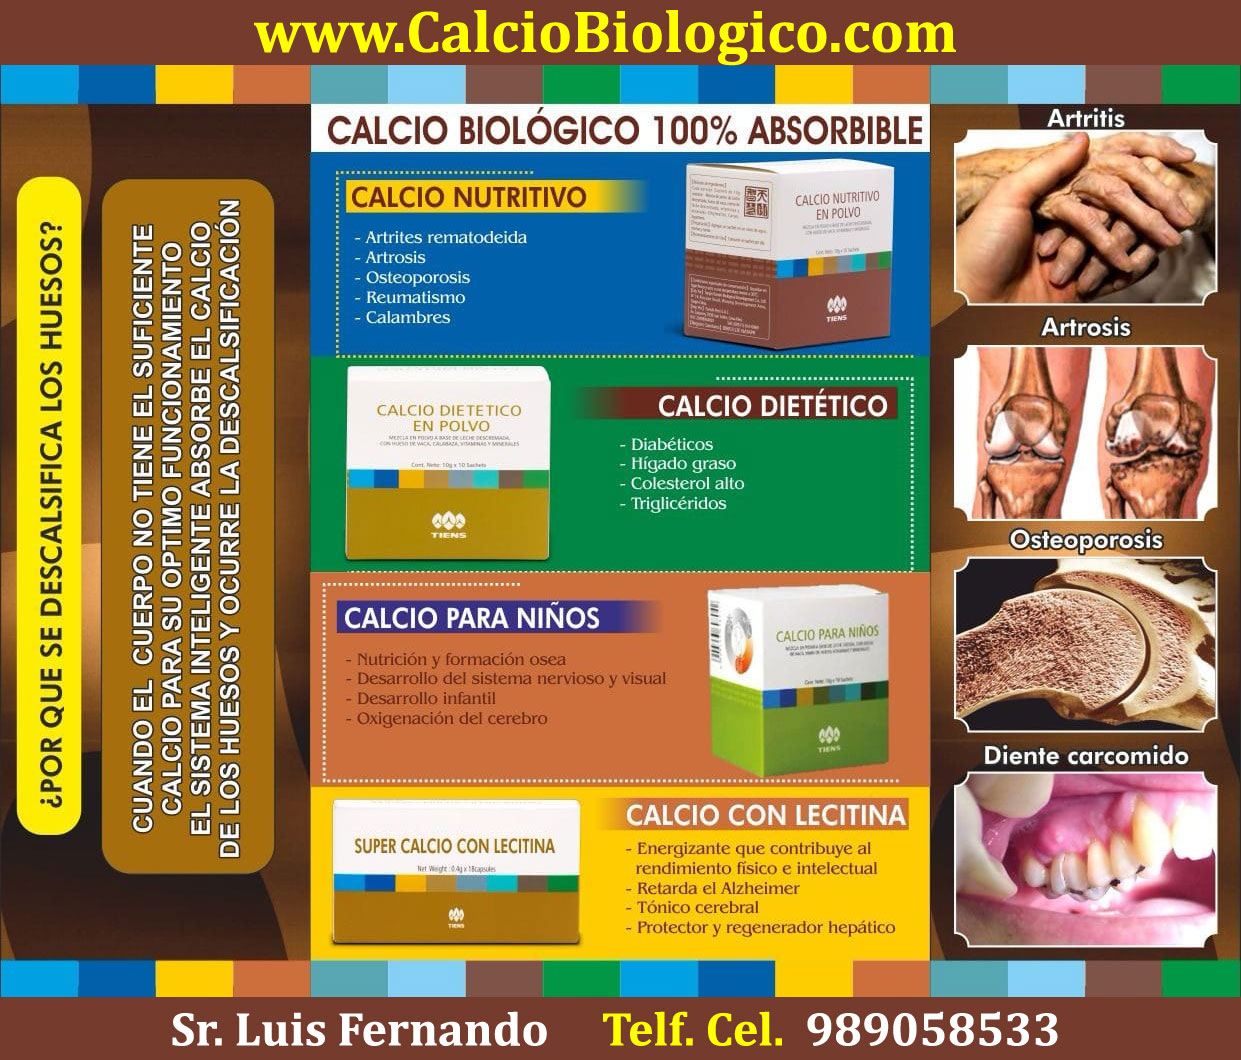 Calcio artritis osteoporosis artrosis dientes uñas